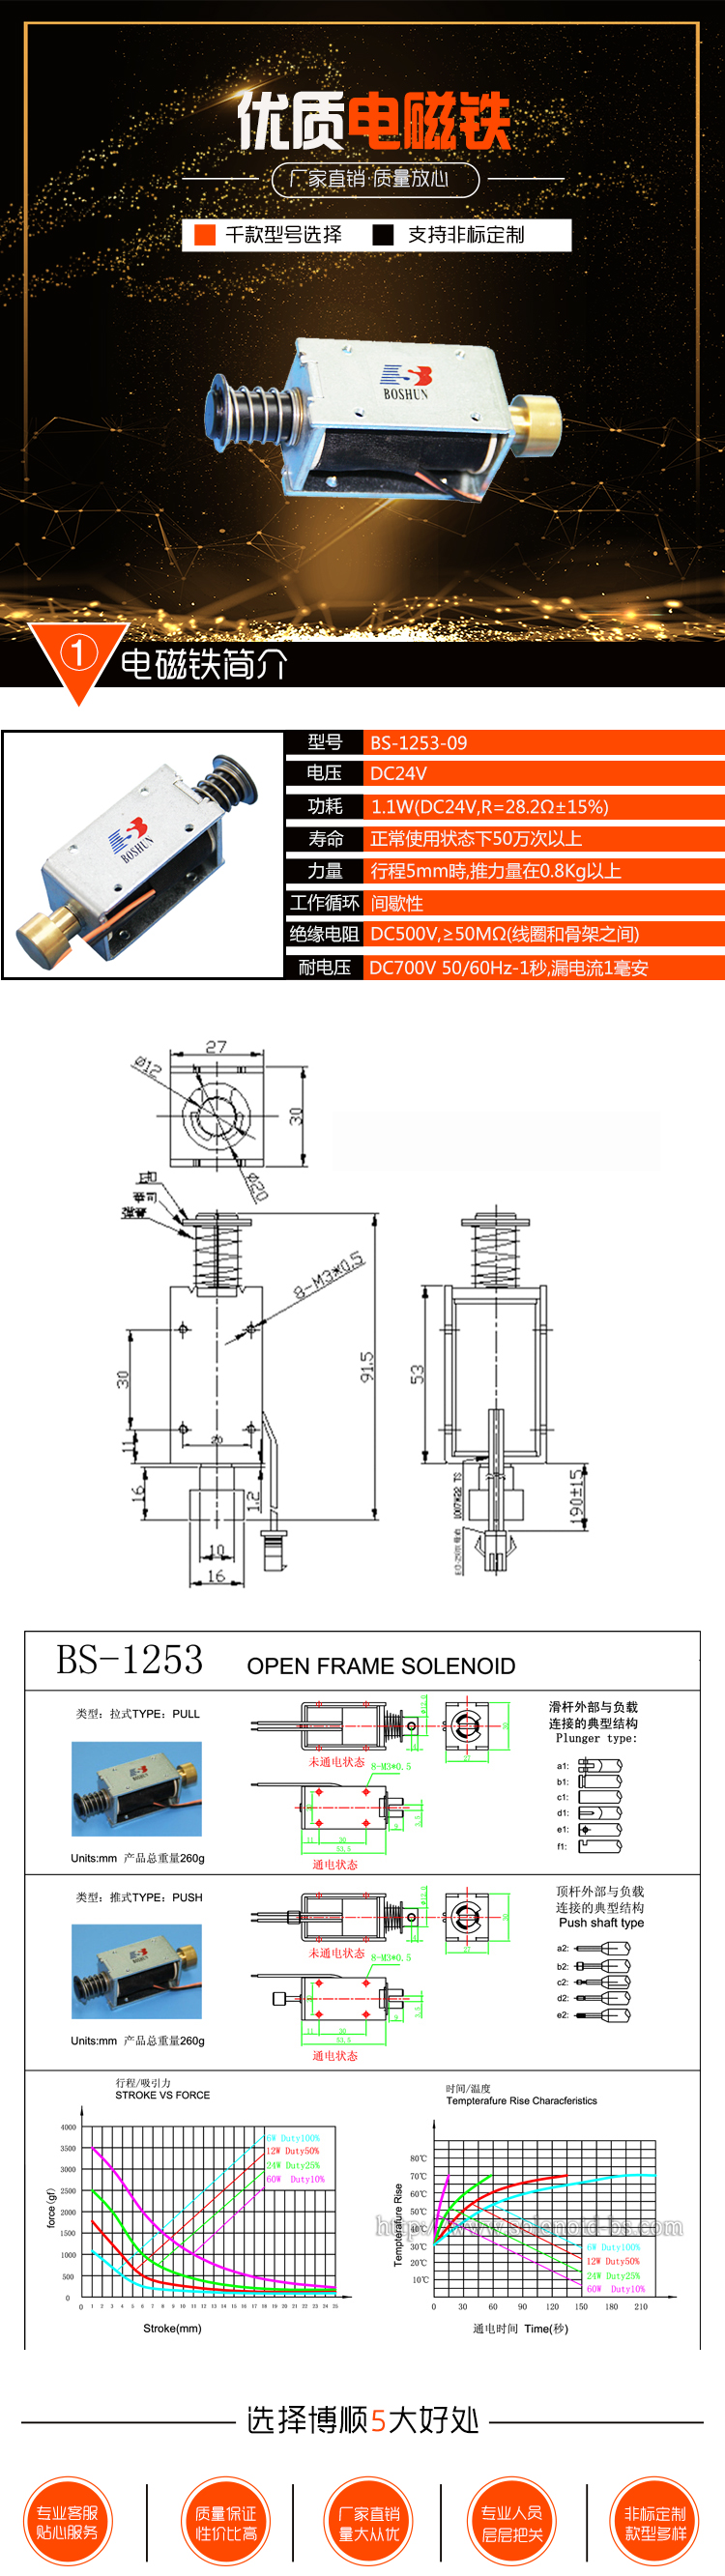 打印机电磁铁  BS-1253-09